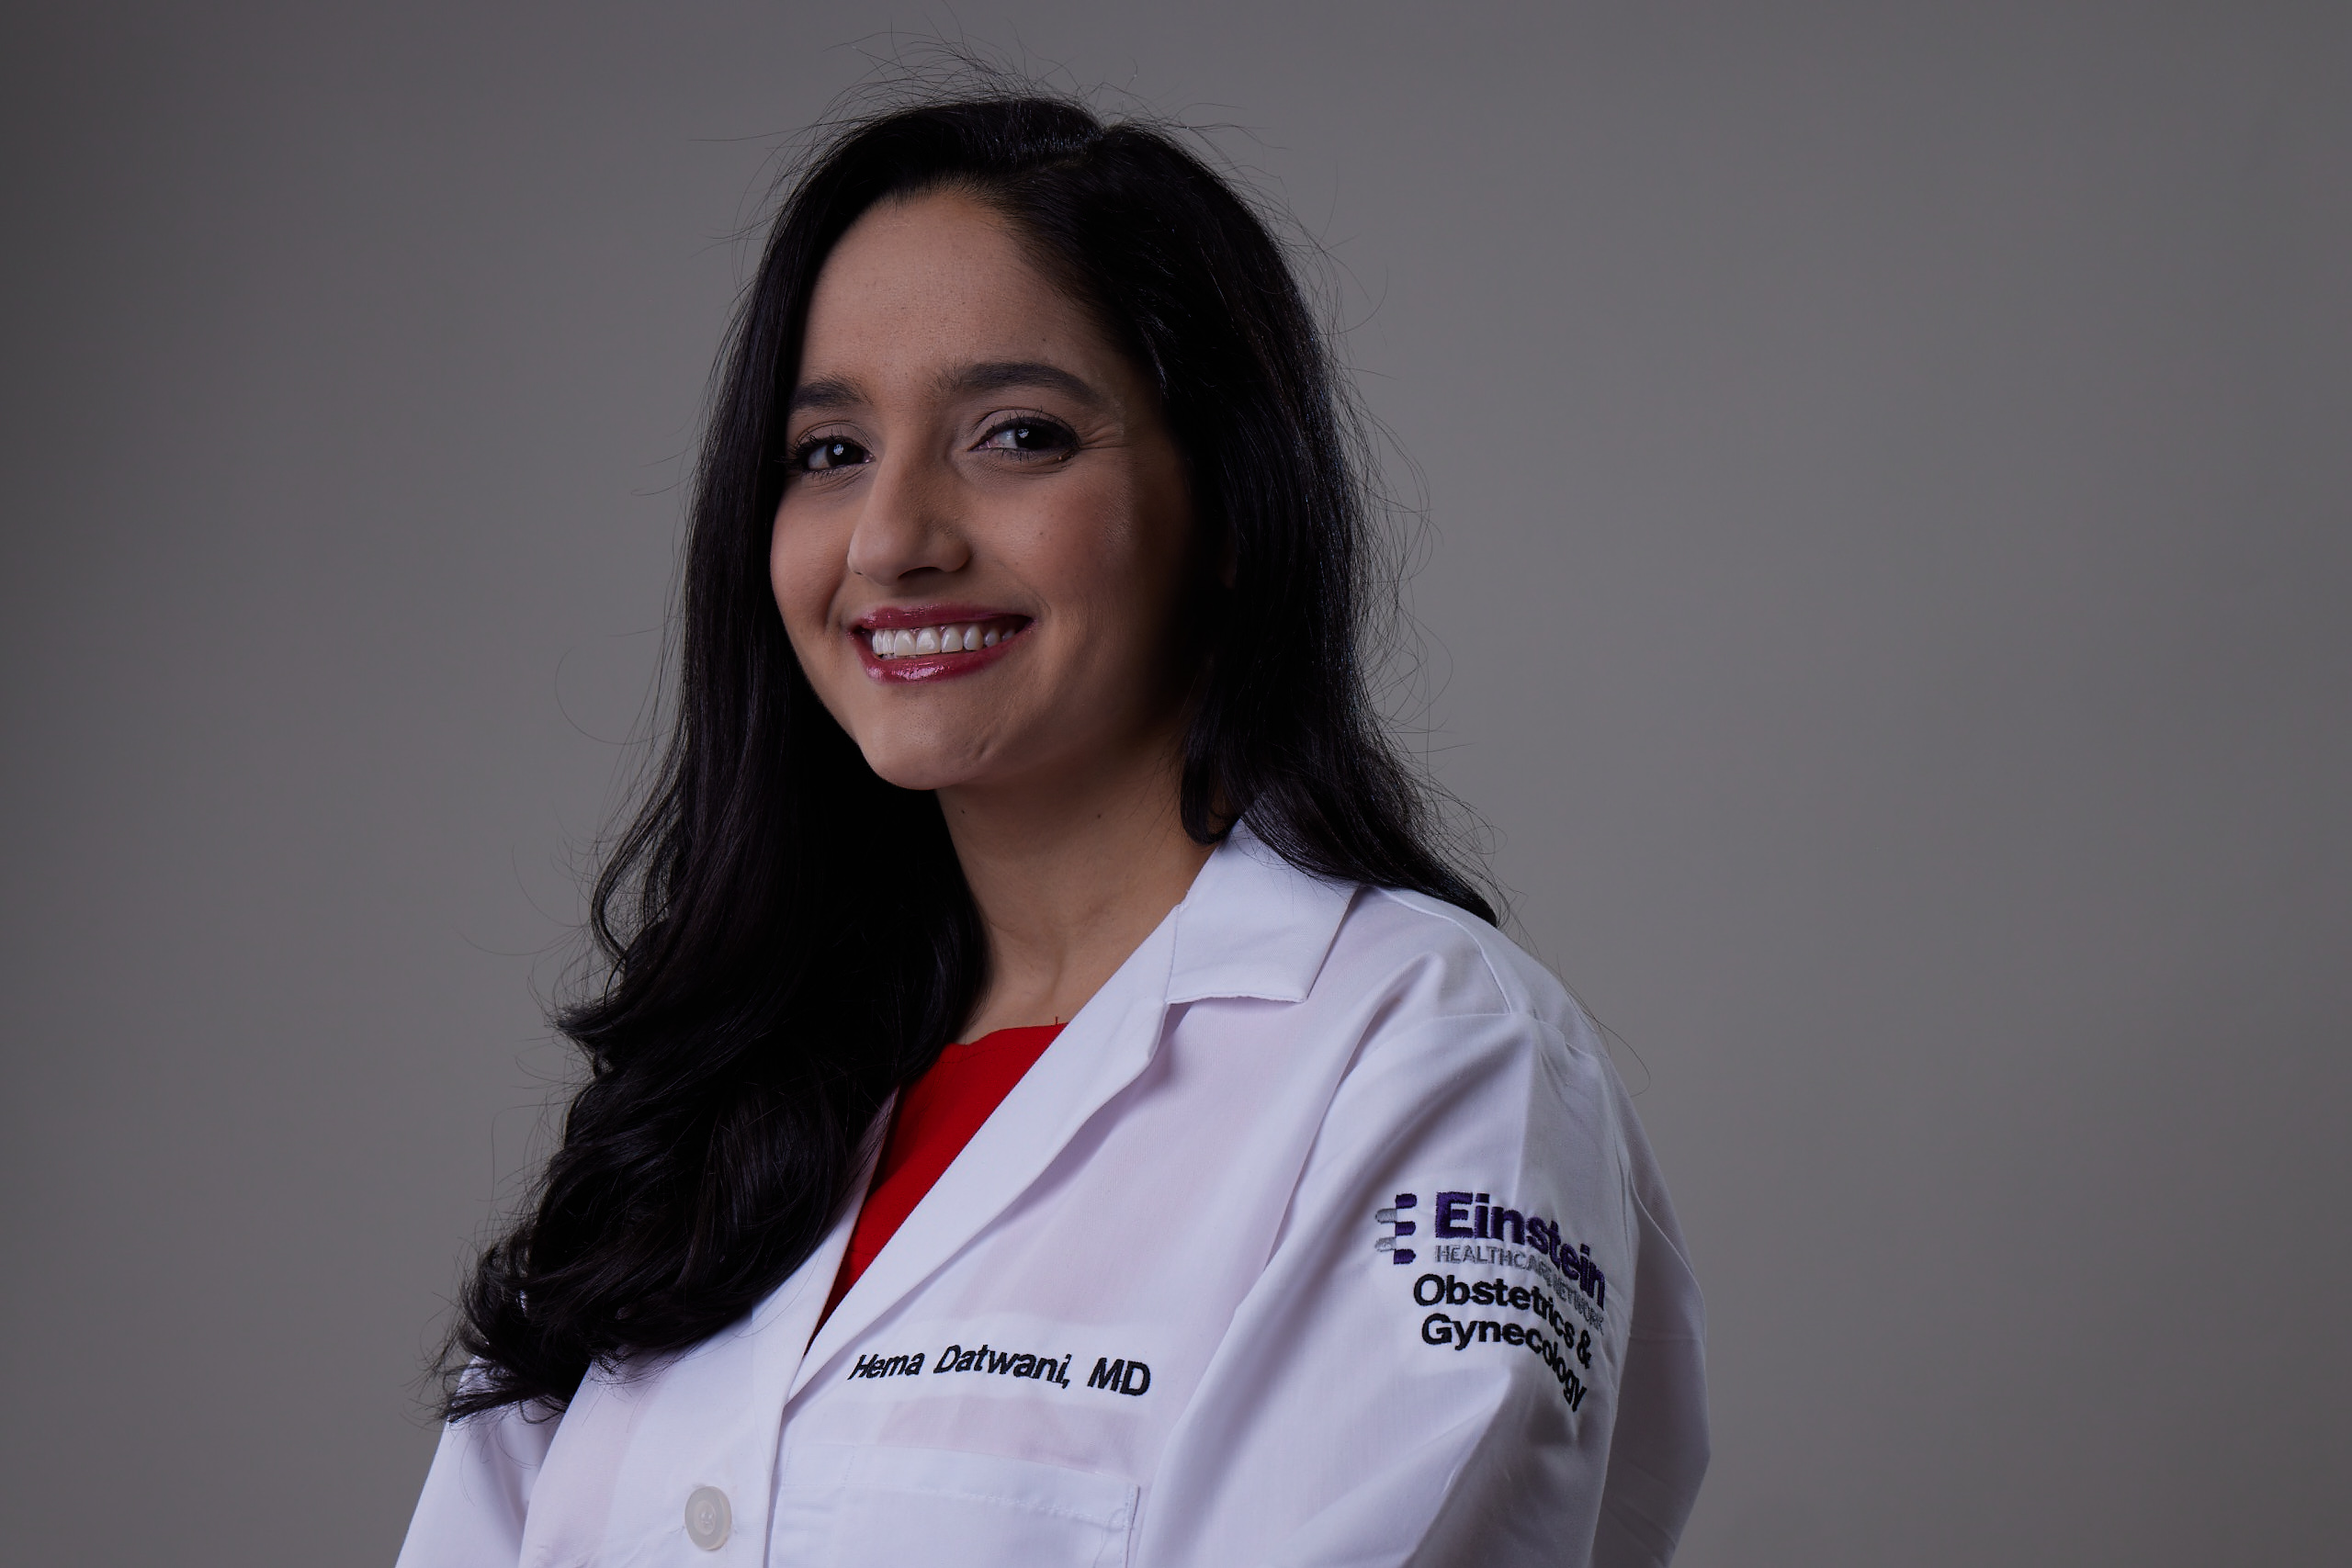 Dr. Hema Datwani is an obstetrician/gynecologist at Einstein Medical Center. Photo: Harrison Brink/AL DÍA News. 